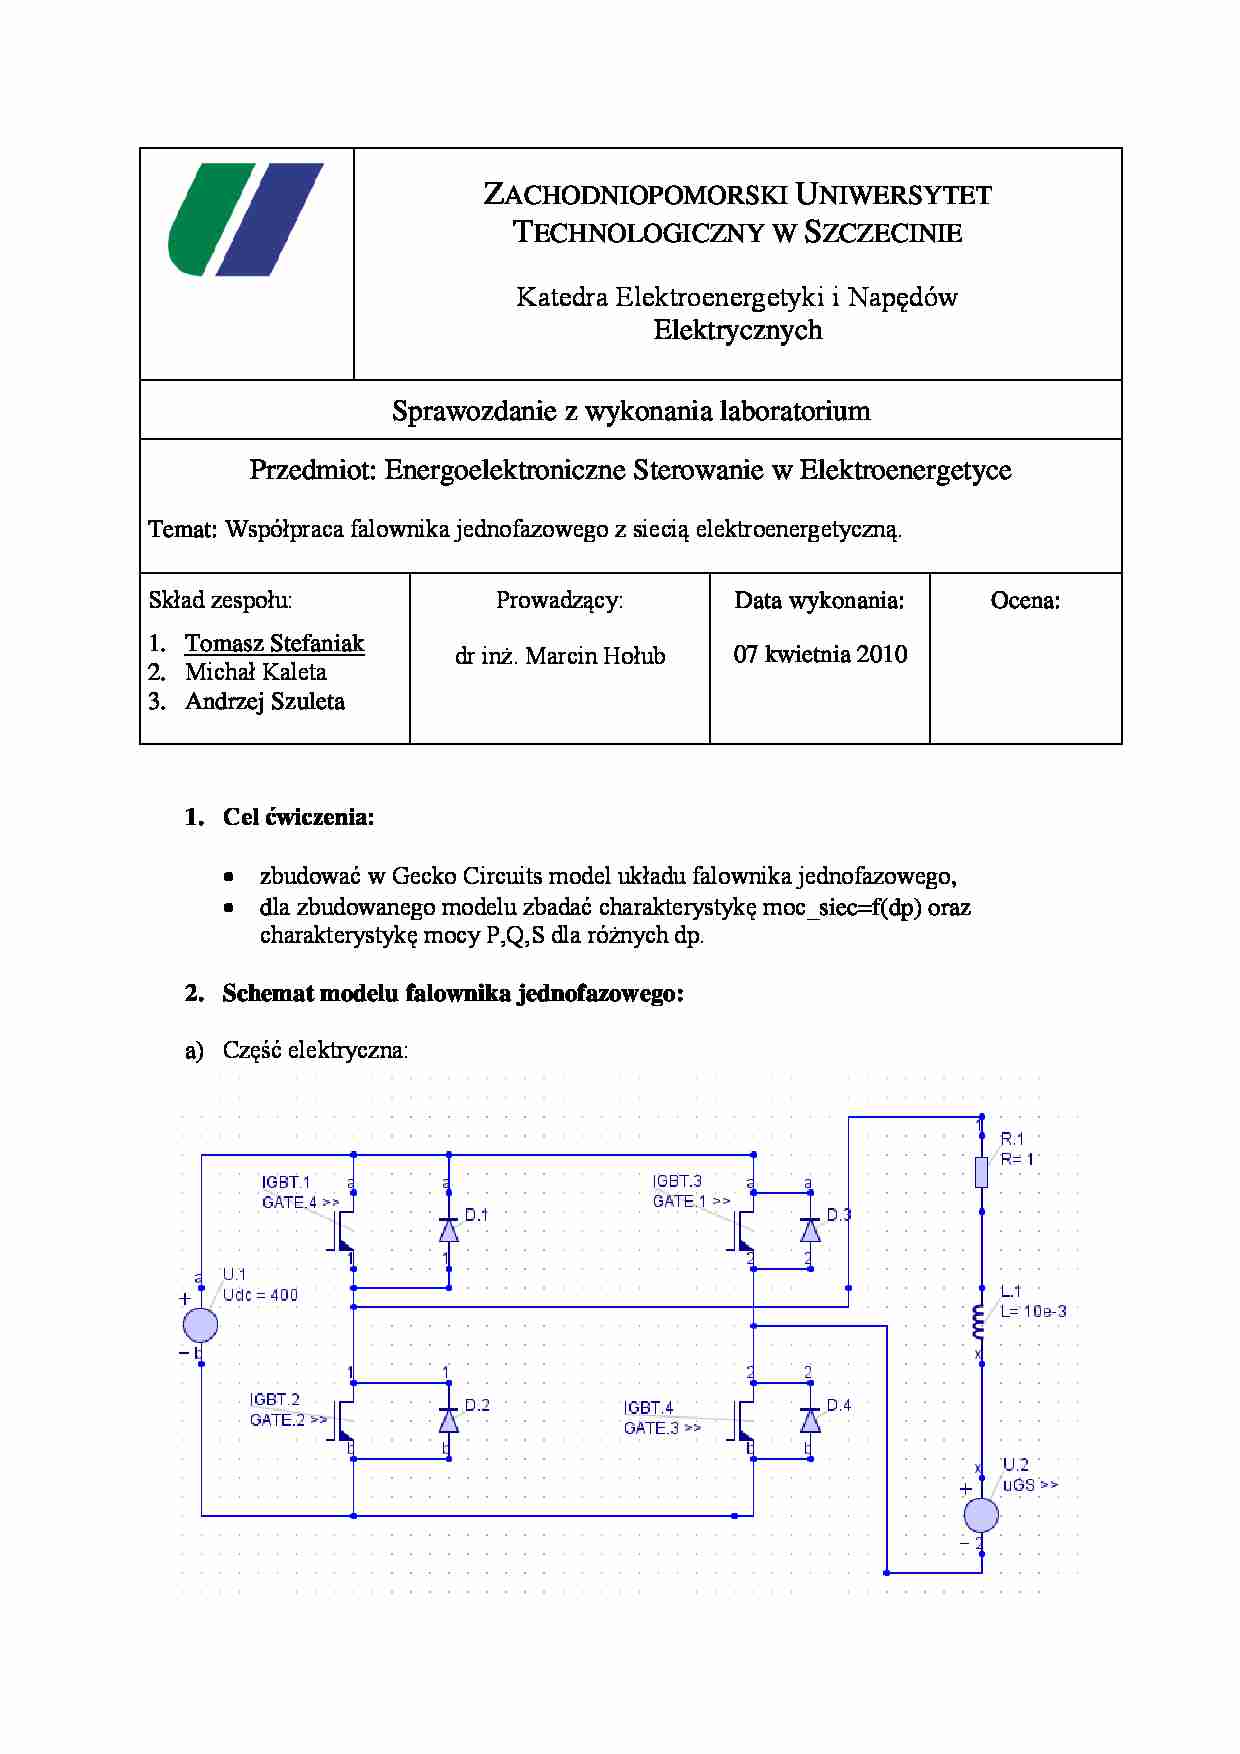 Sprawozdanie: Współpraca falownika jednofazowego z siecią elektroenergetyczną - strona 1